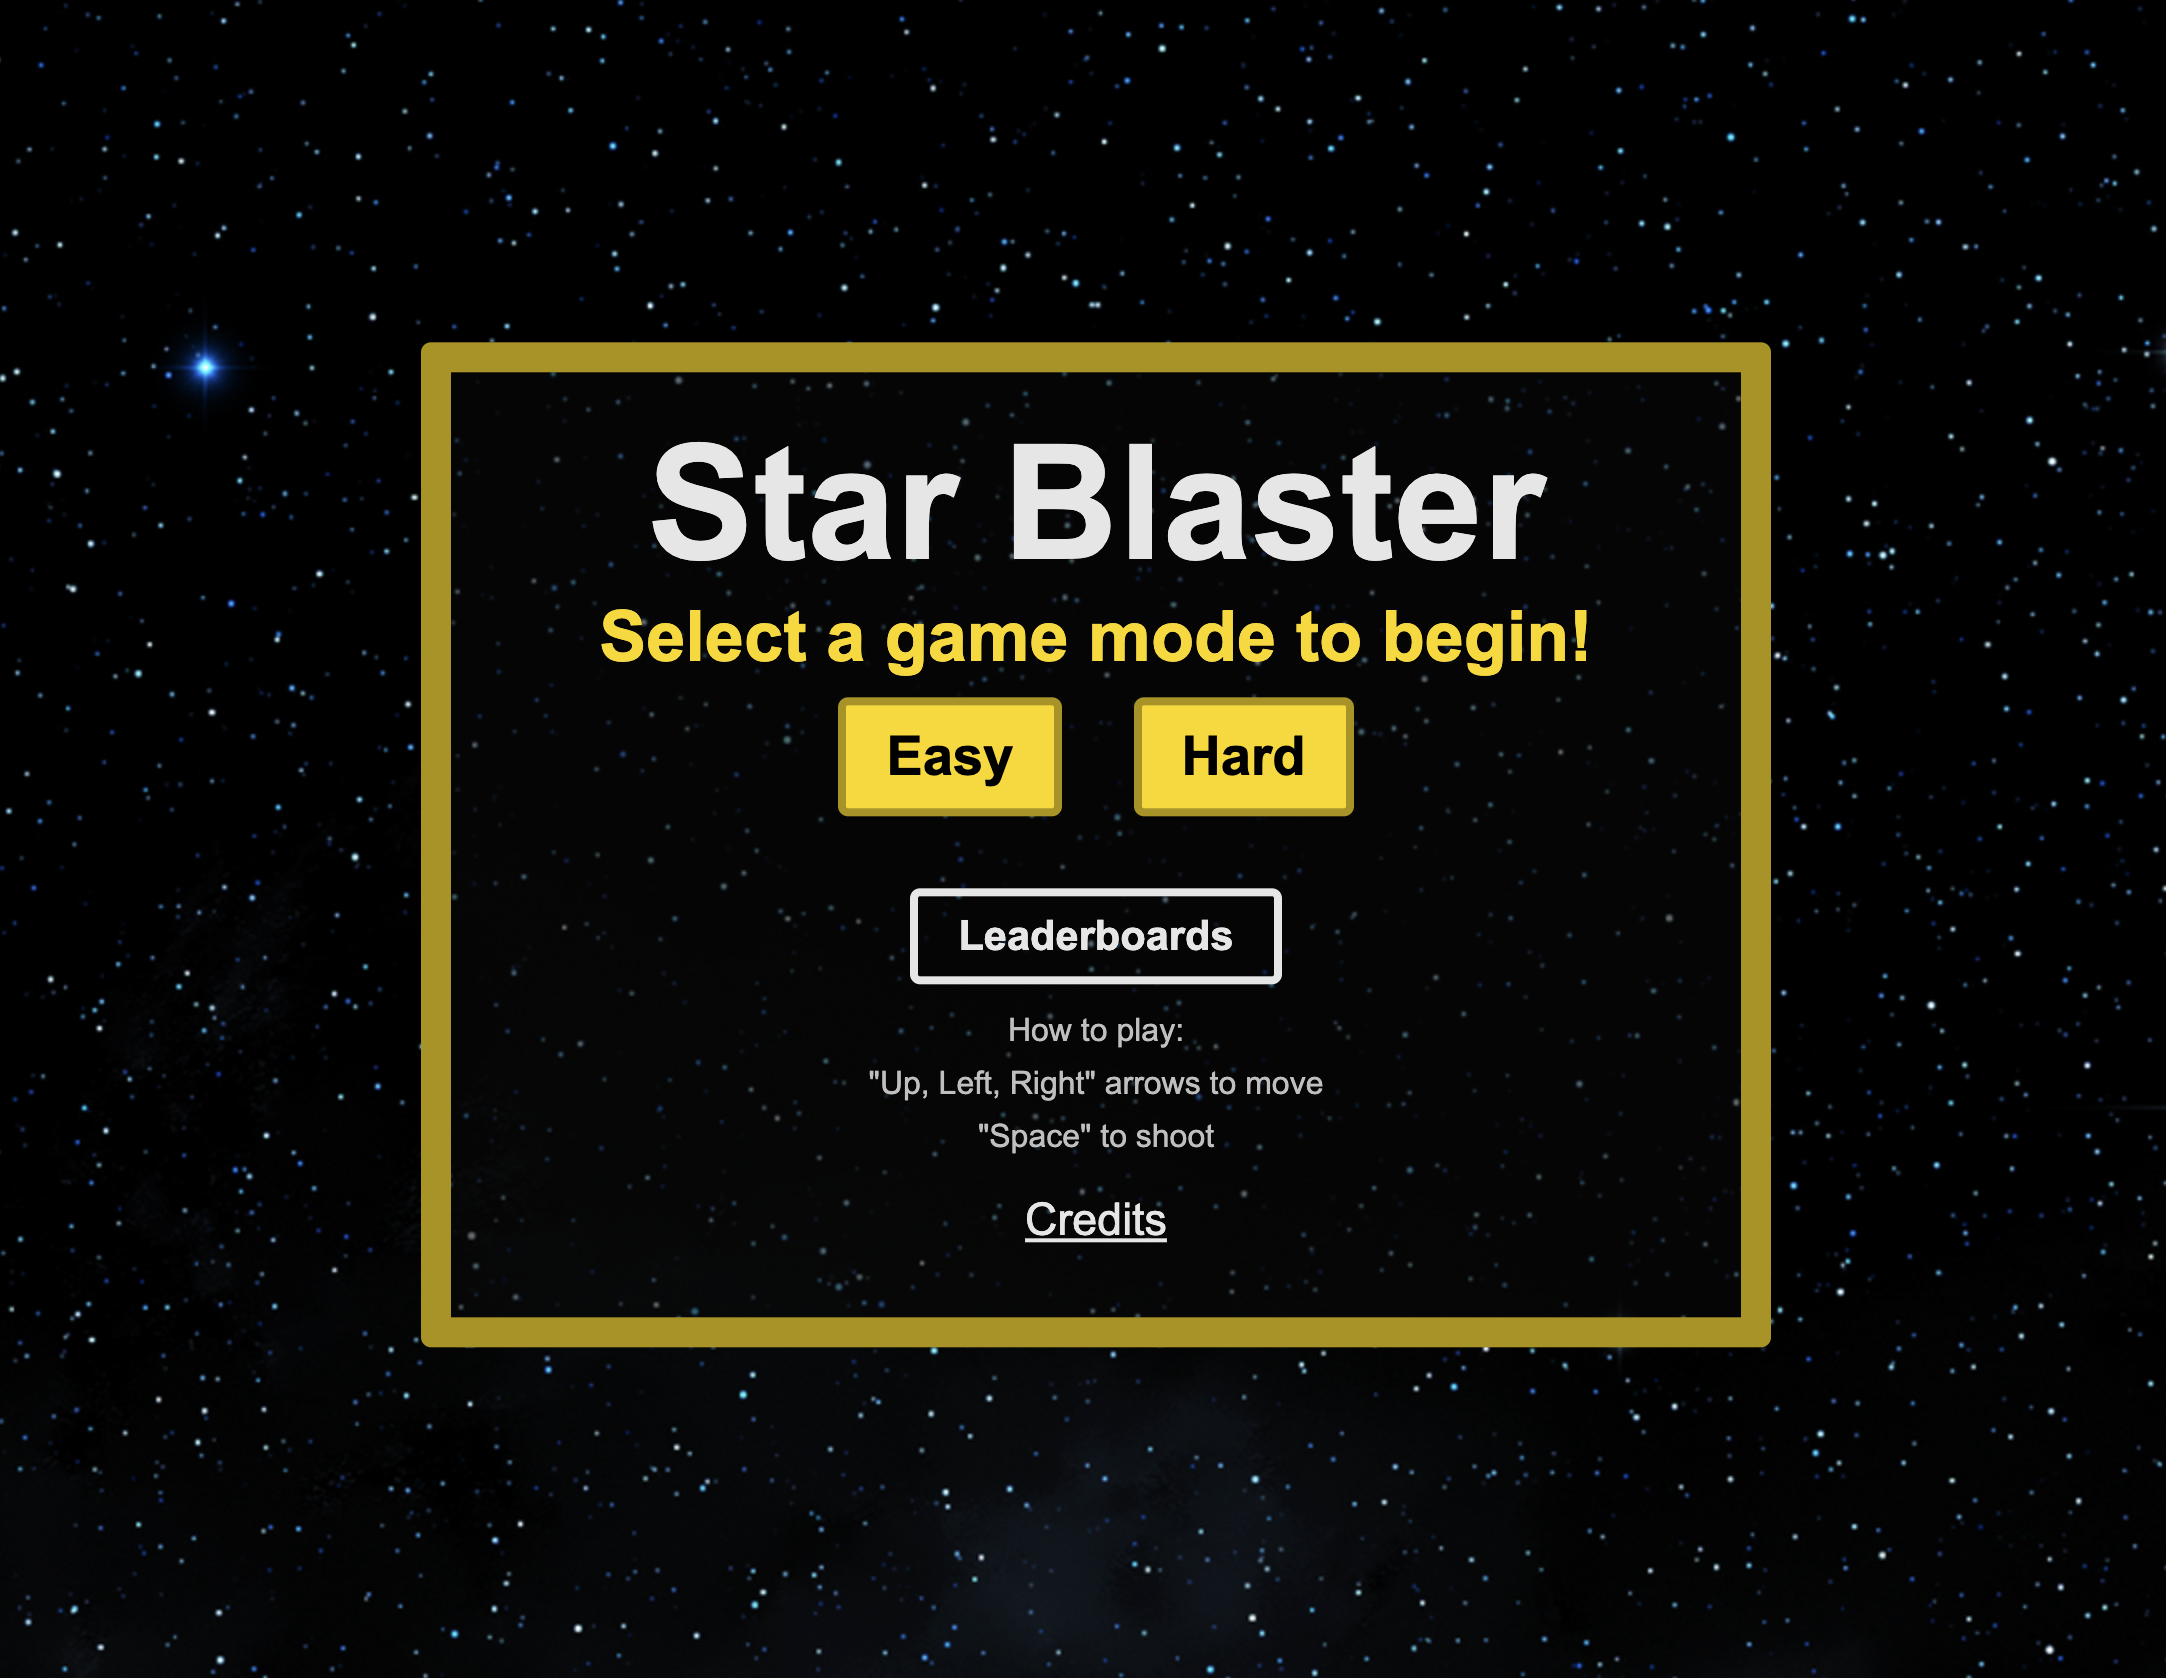 StarBlaster_details